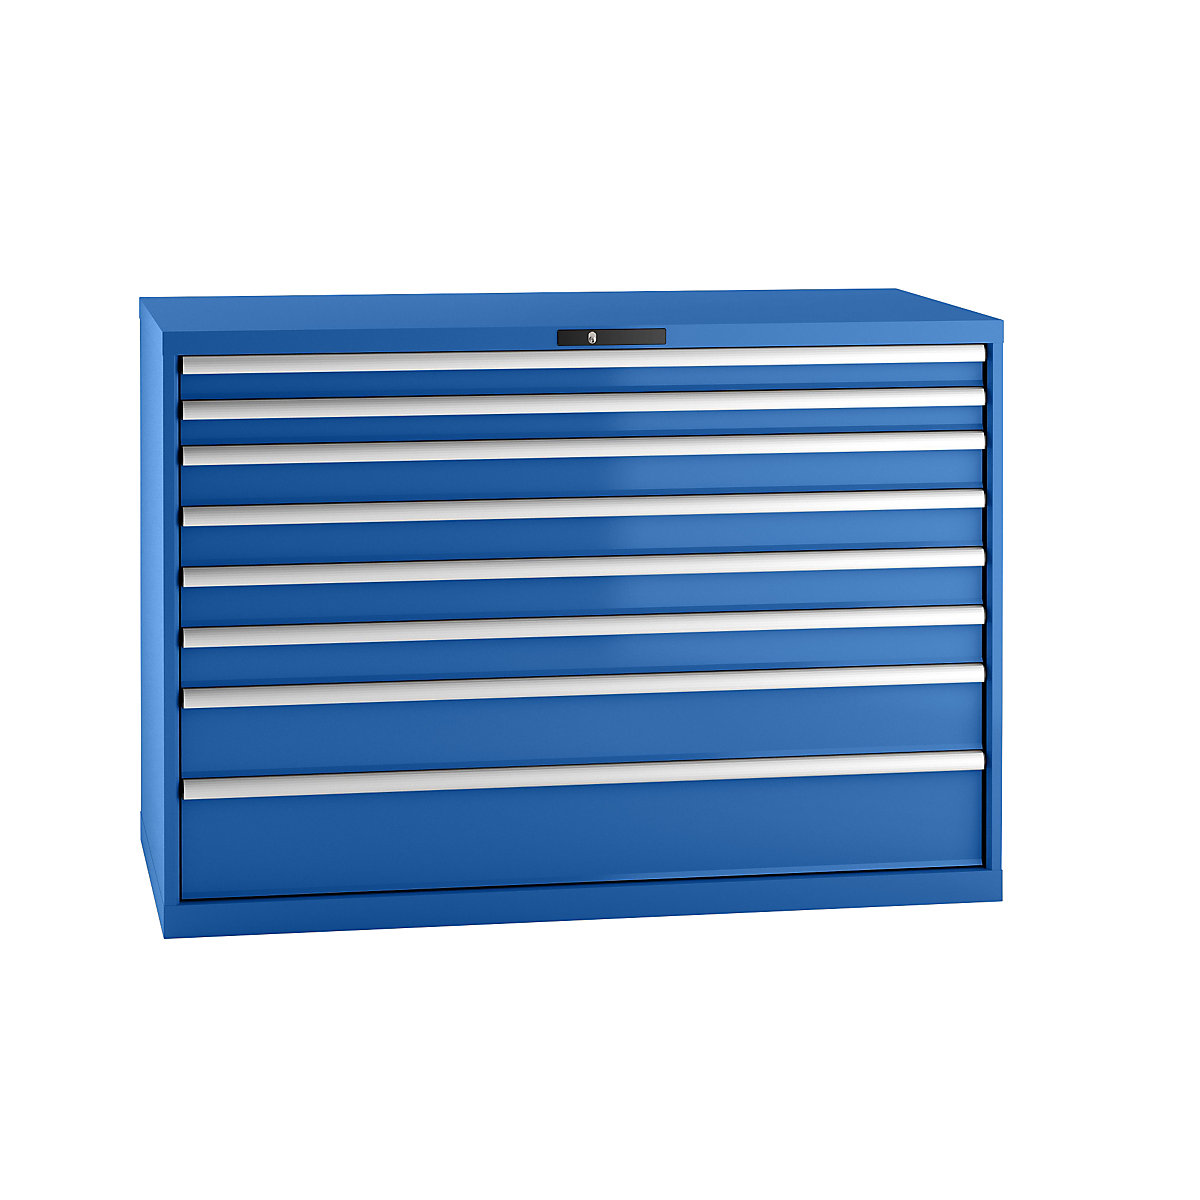 LISTA – Armoire à tiroirs en tôle d'acier, h x l 1000 x 1431 mm, 8 tiroirs, charge max. 75 kg, bleu gentiane